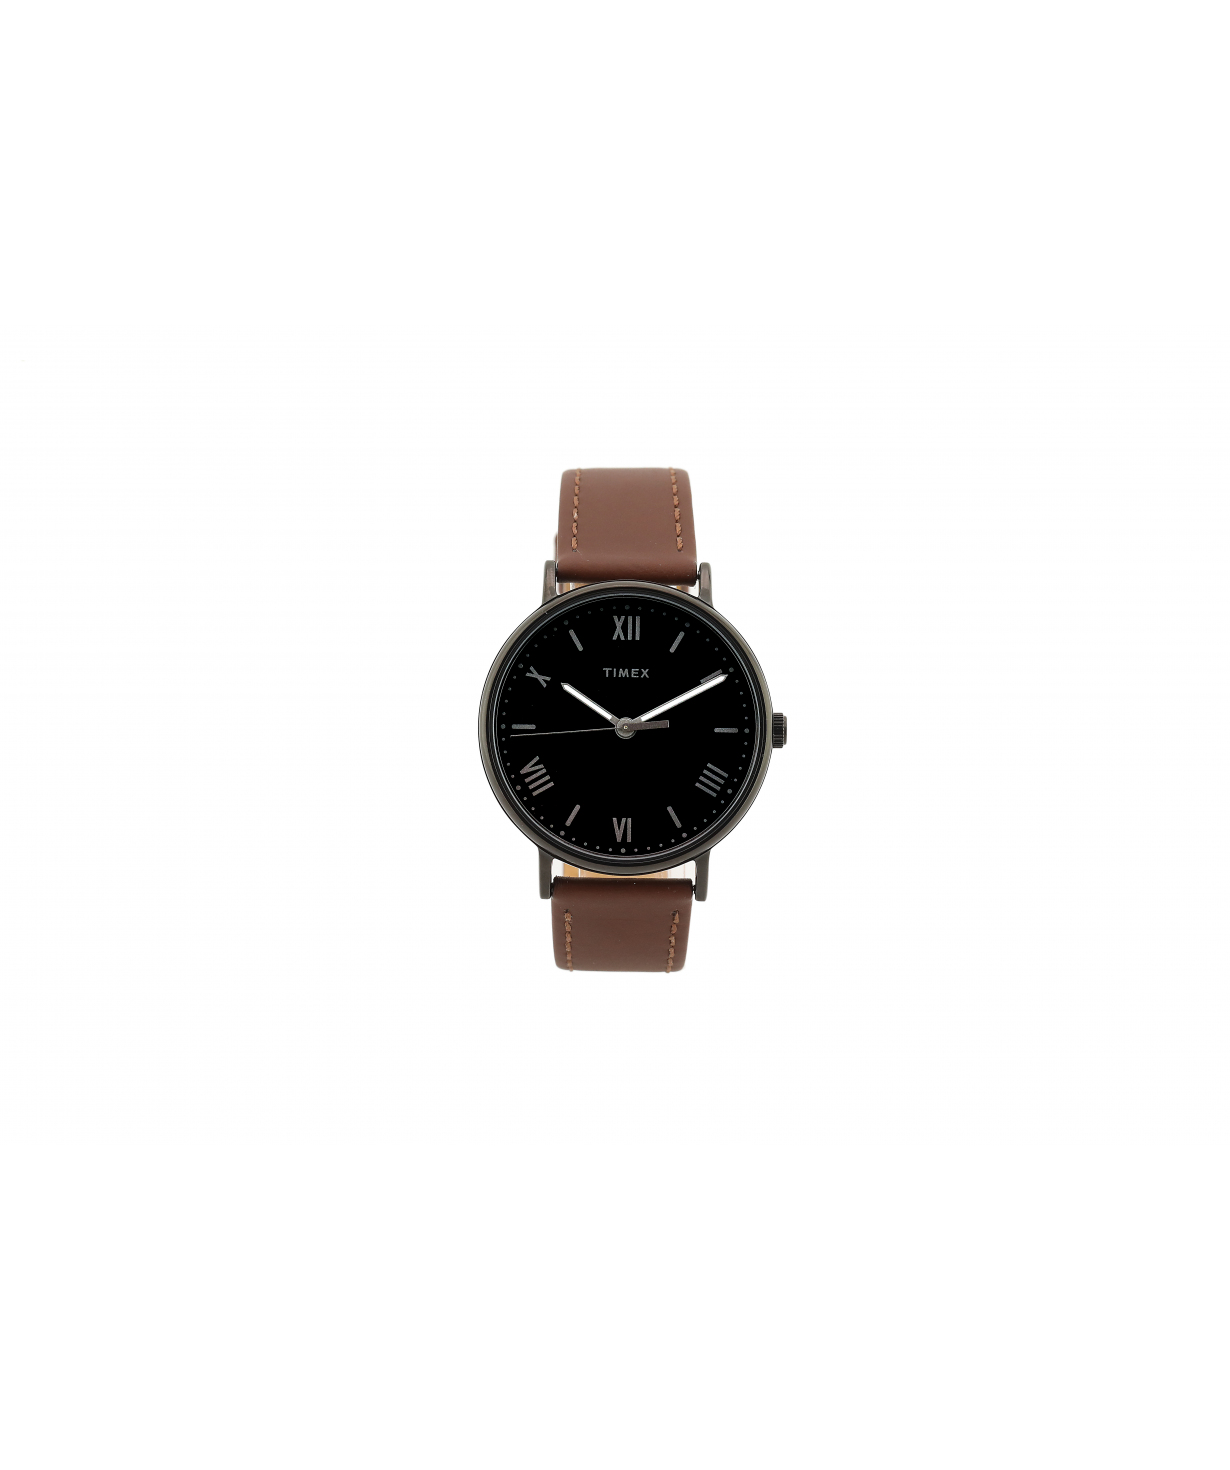 Ժամացույց «Timex» ձեռքի   TW2R80300